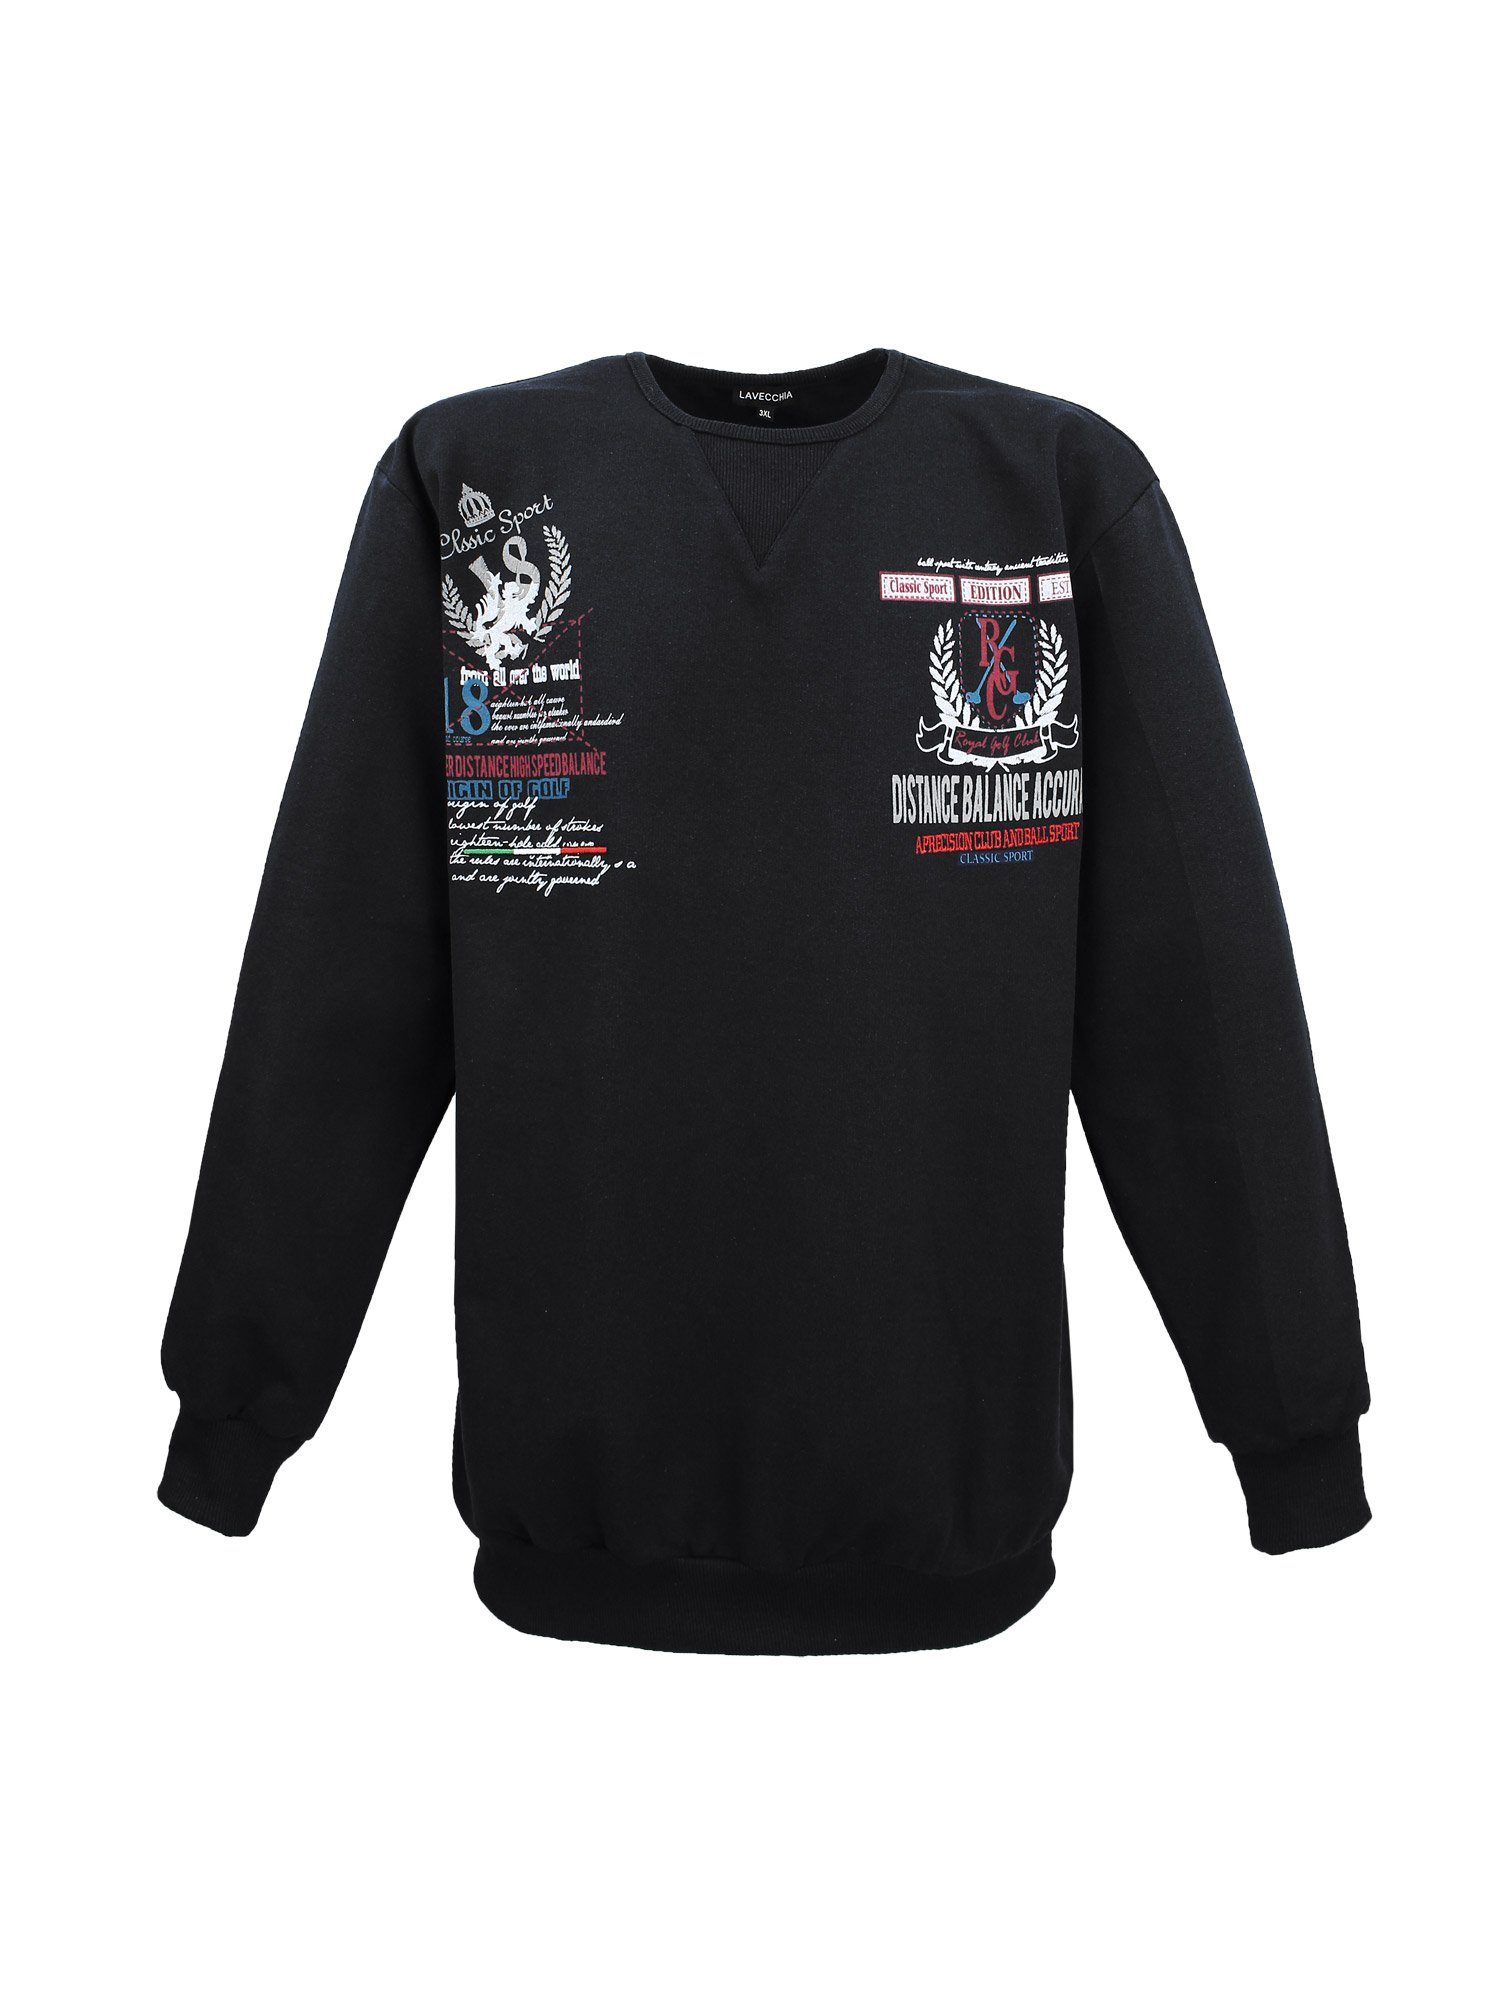 Lavecchia Sweatshirt Übergrößen Sweater LV-603 Sweat Pulli Pullover schwarz